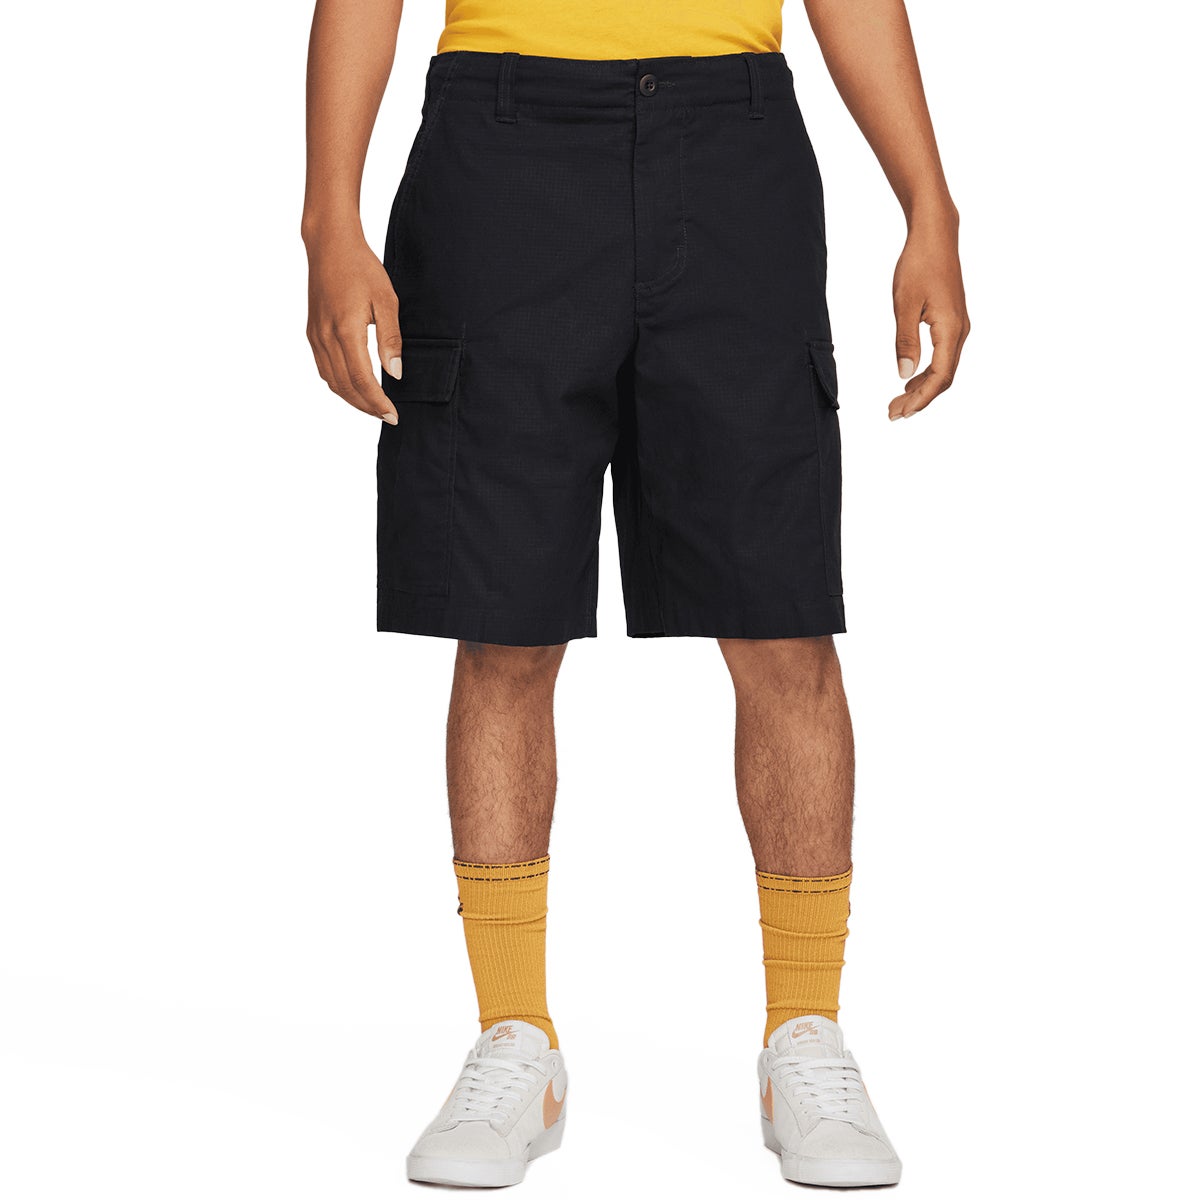 Nike SB Kearny Cargo Short in Black | Boardertown